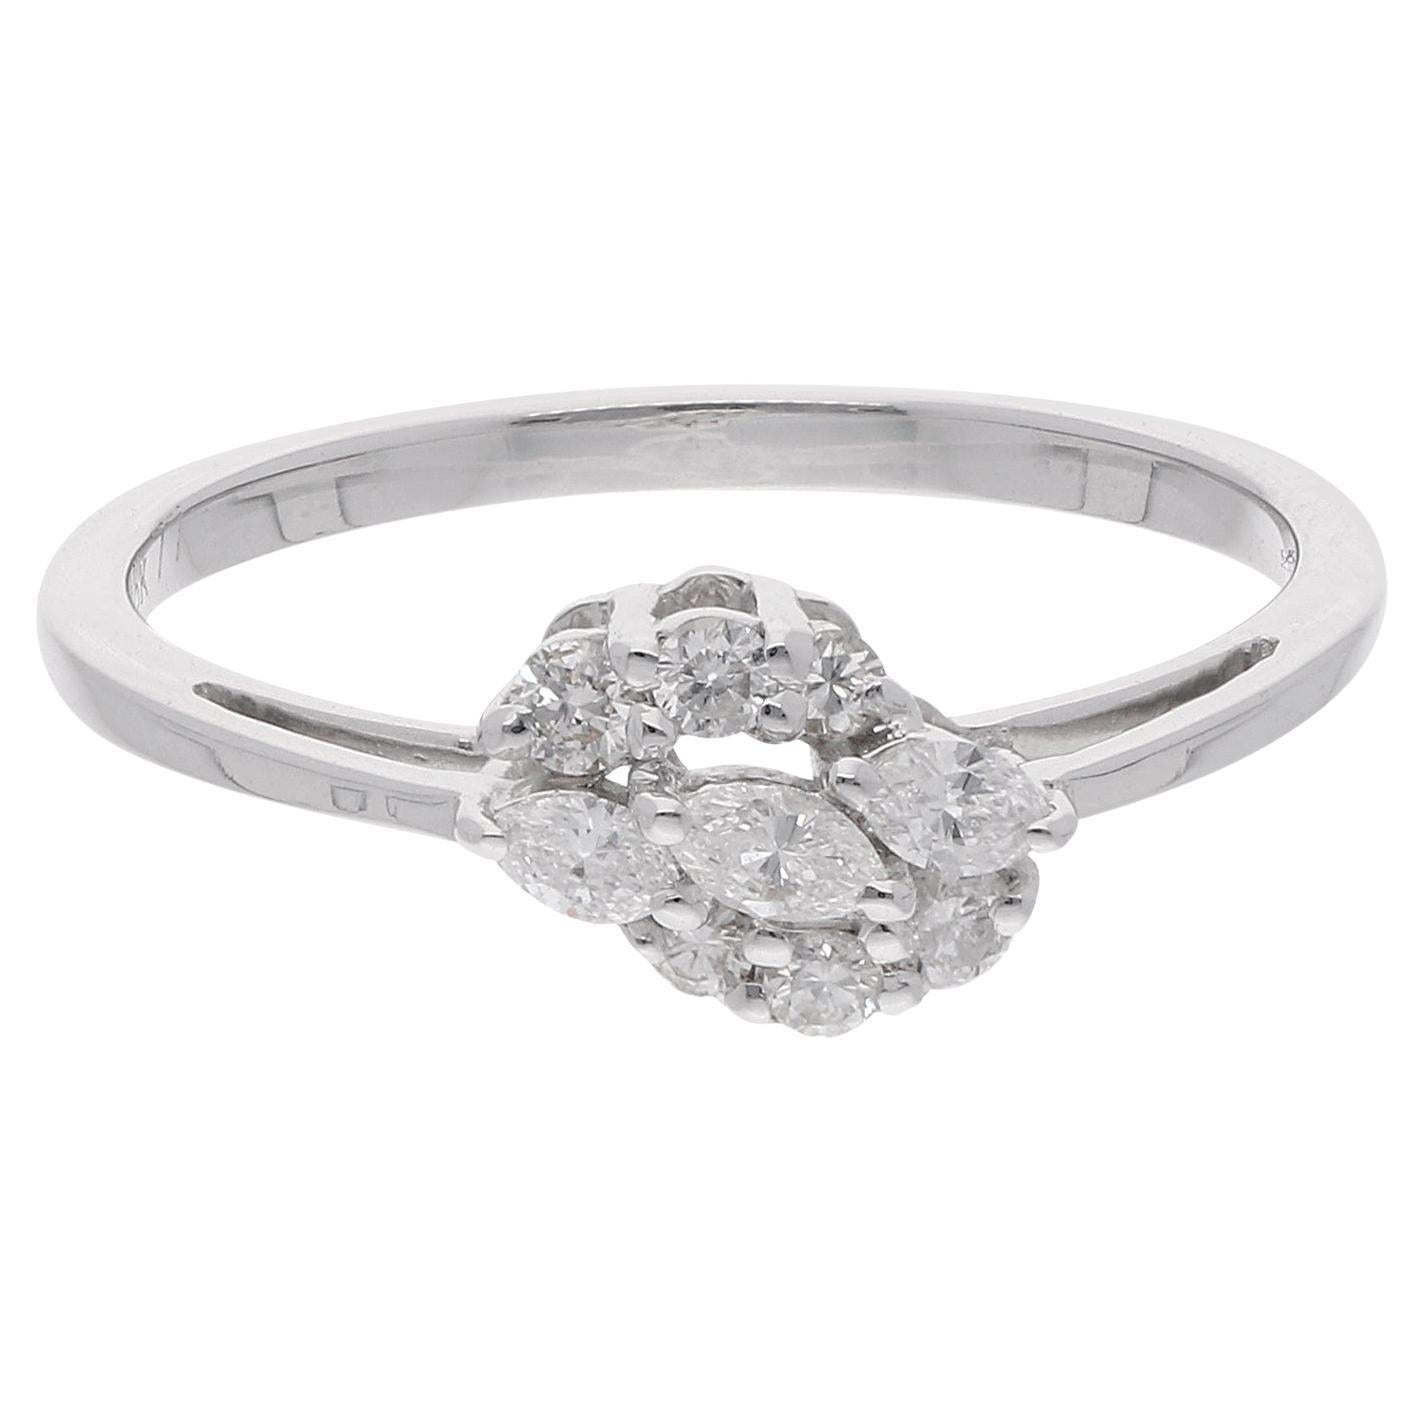 0.28 Carat Marquise Round Diamond Ring 18 Karat White Gold Handmade Fine Jewelry